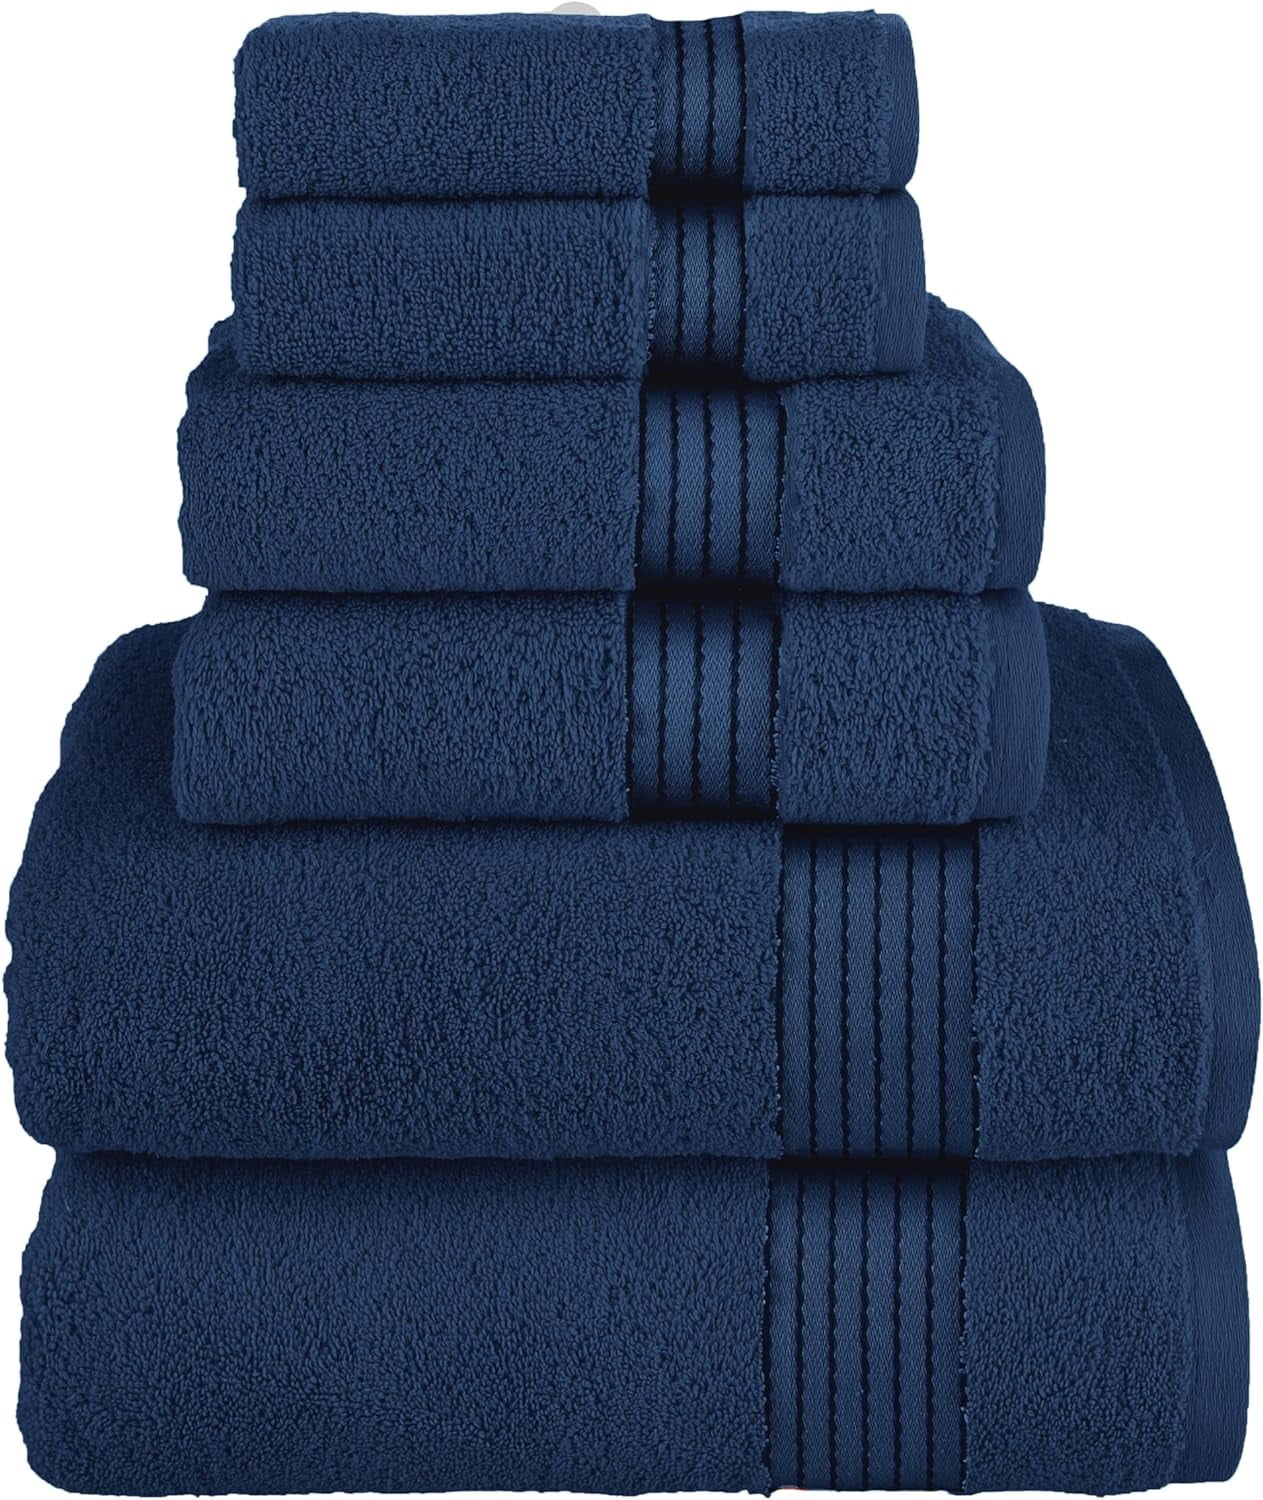 Carp Fish Royal Blue Towel sets or available individually